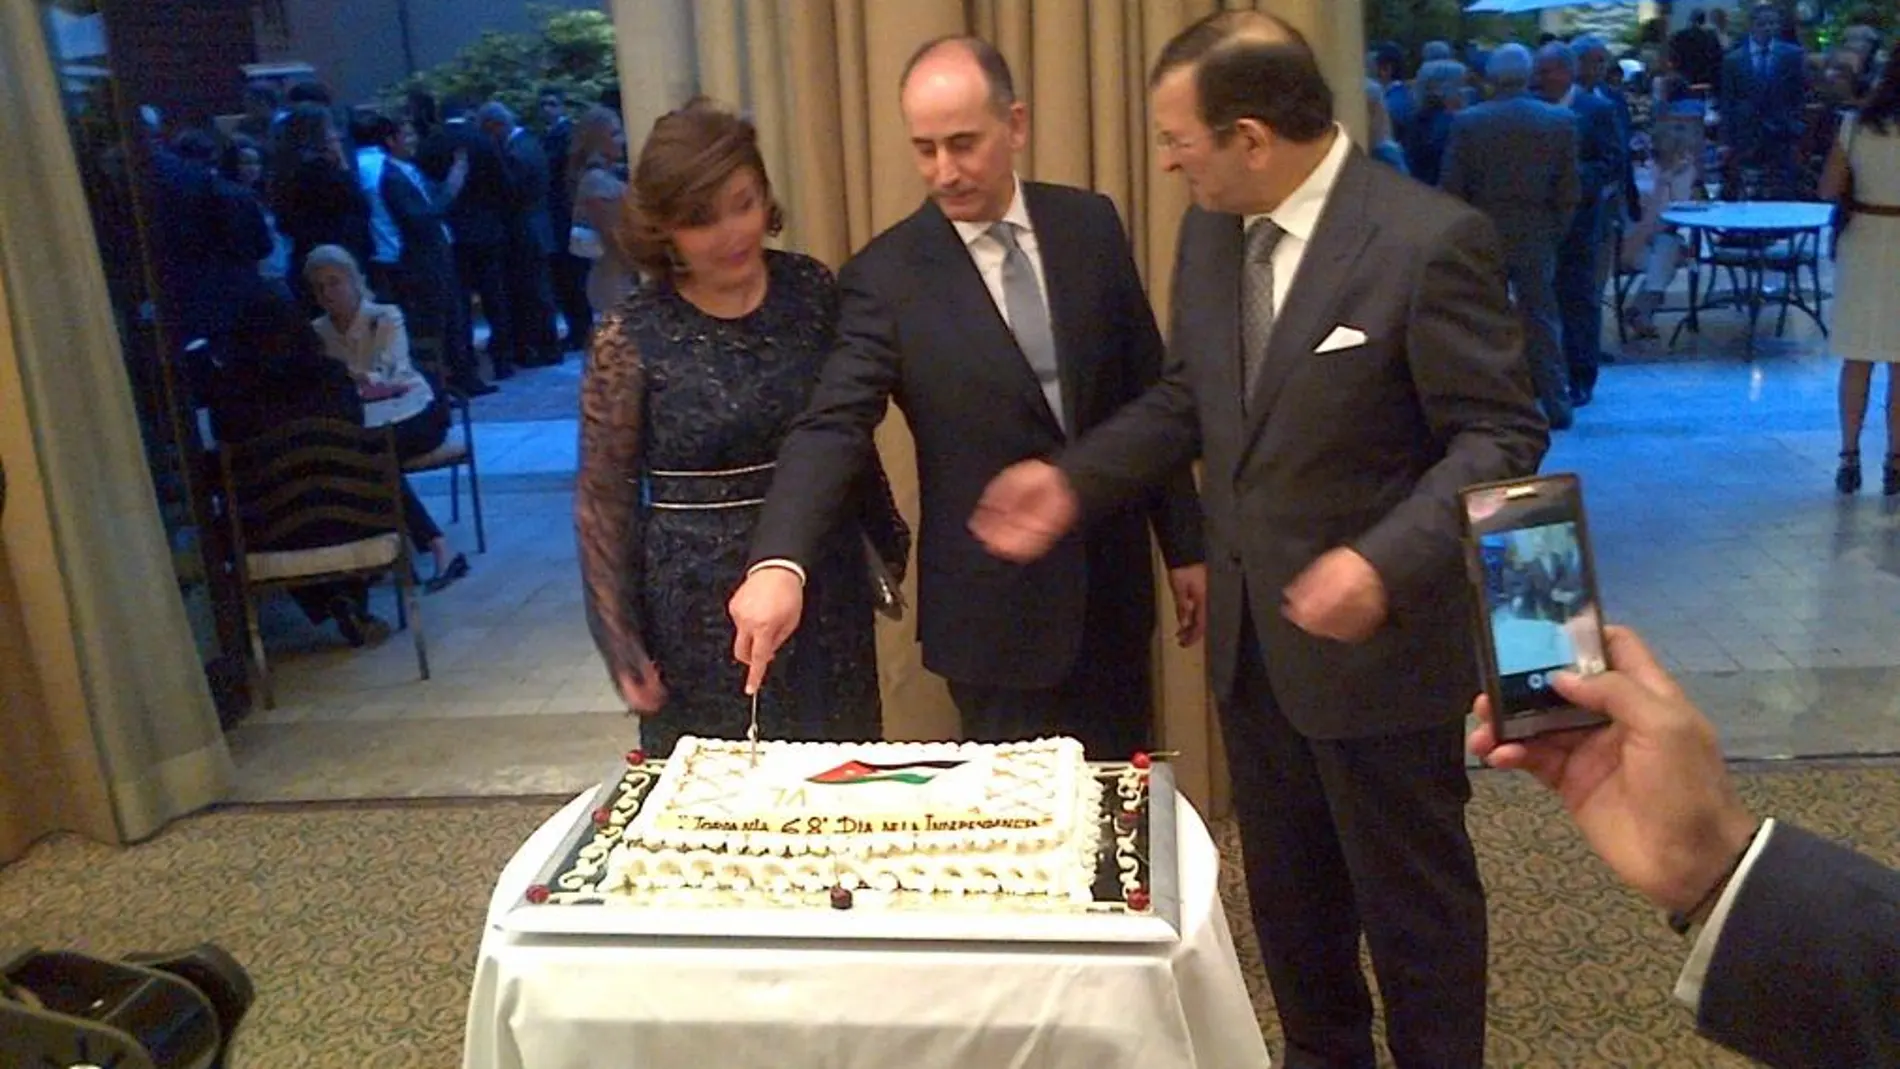 De izda a drcha., señora de Majali, esposa del embajador de Jordania, junto a su marido el embajador jordano Ghassan Majali (en el centro) cortando la tarta, delante del embajador de Argelia don Mohammed Haneche.